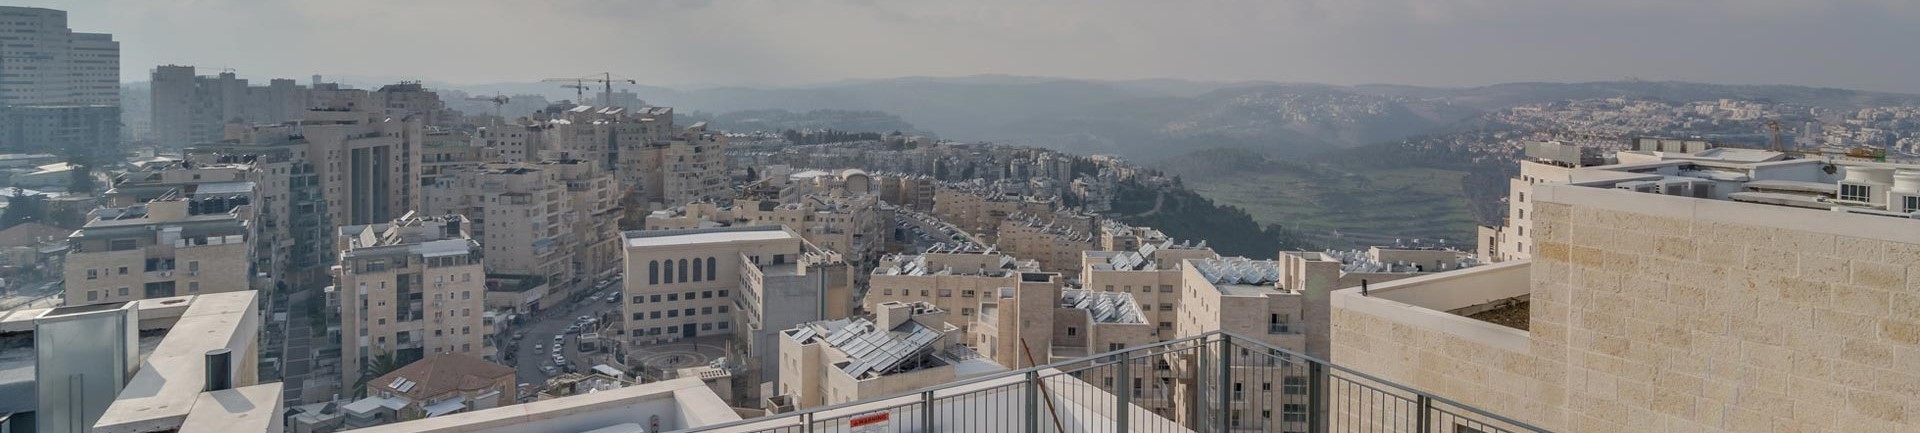 Jerusalem Cityscape